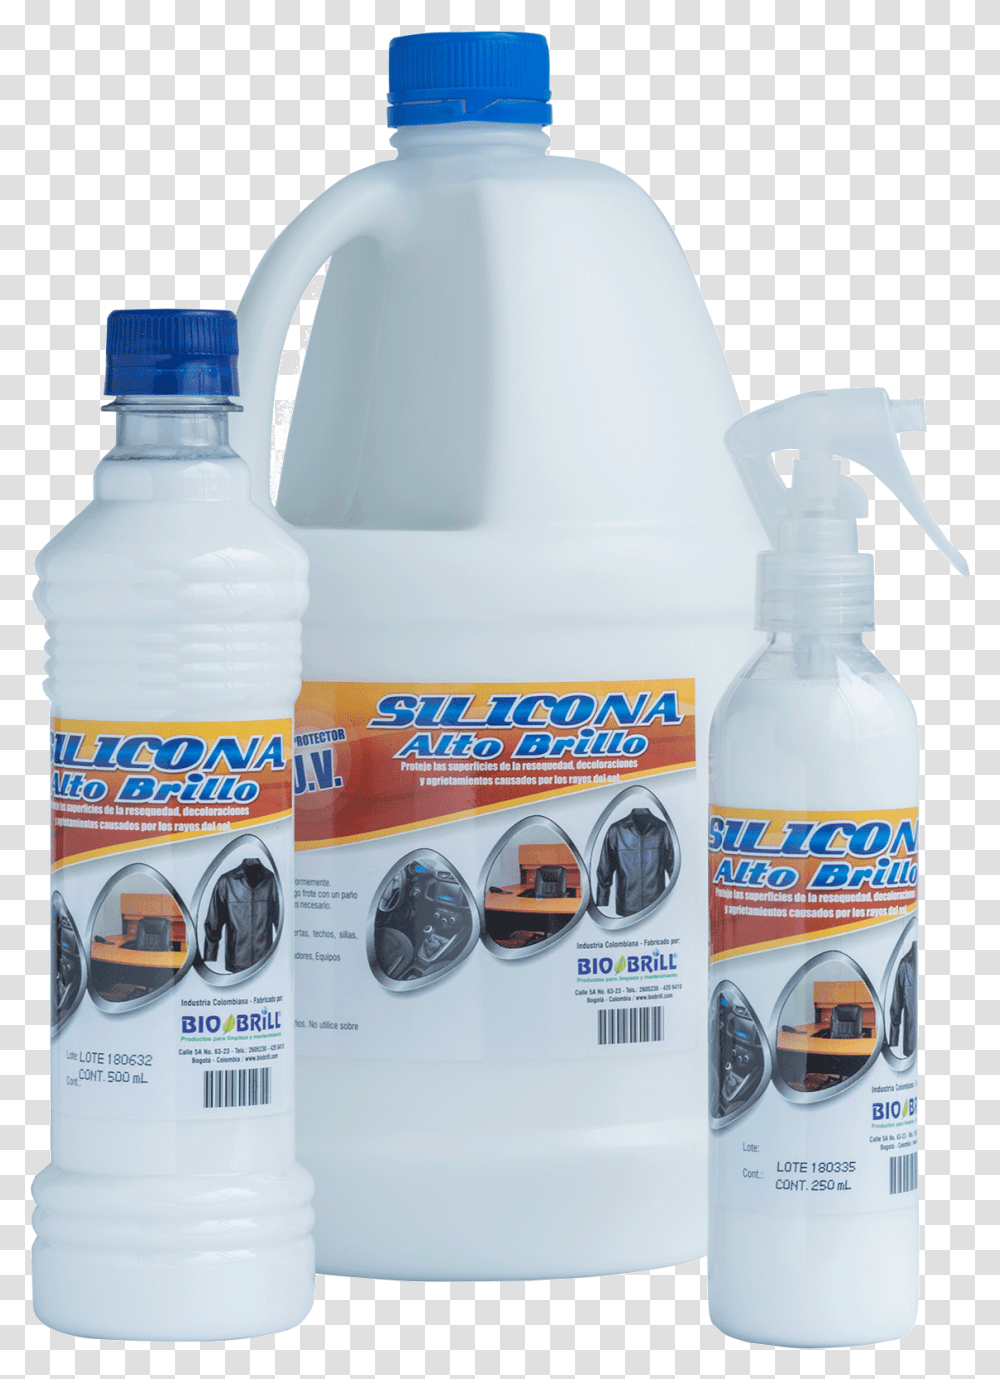 Productos De Limpieza Con Silicona, Bottle, Label, Can Transparent Png